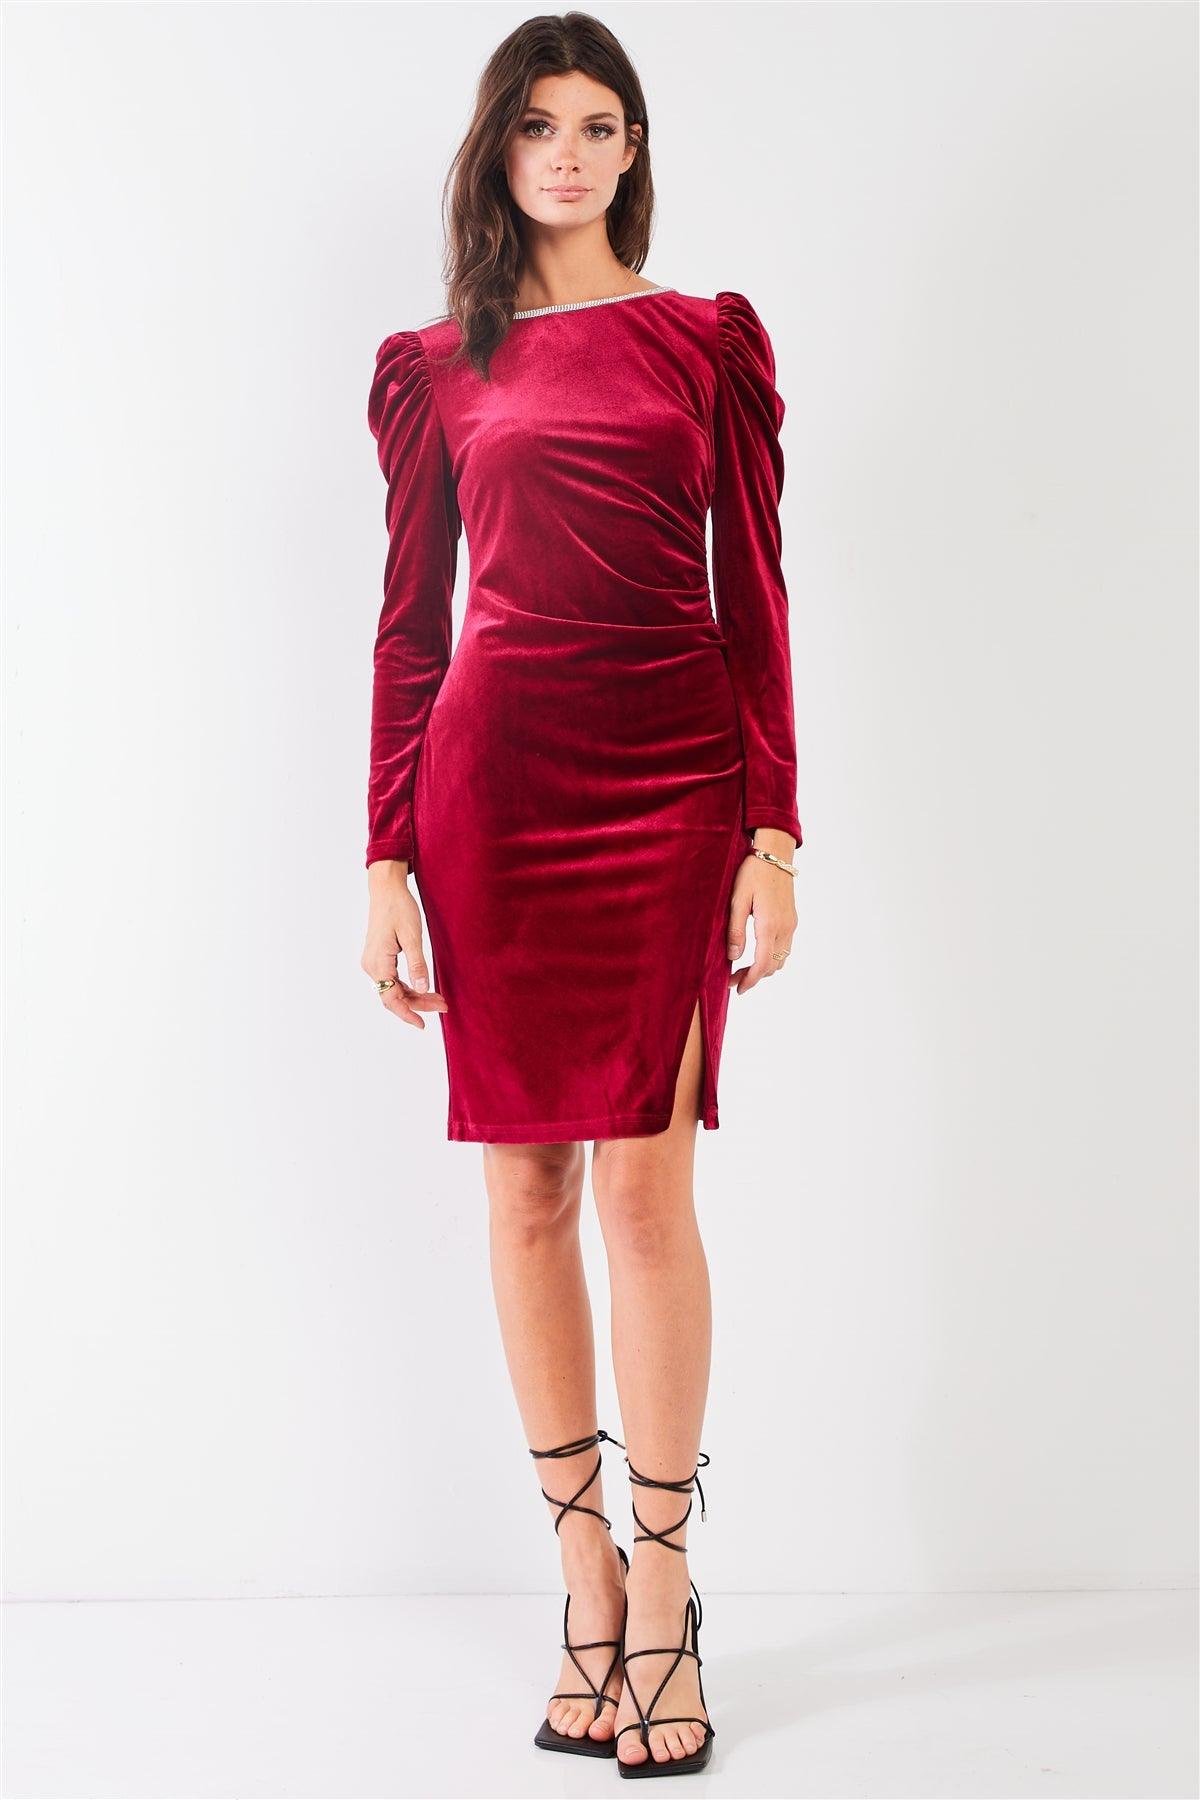 Burgundy Red Velvet Rhinestone Neckline Trim Juliet Long Sleeve Knee Length Slit Dress /2-2-2